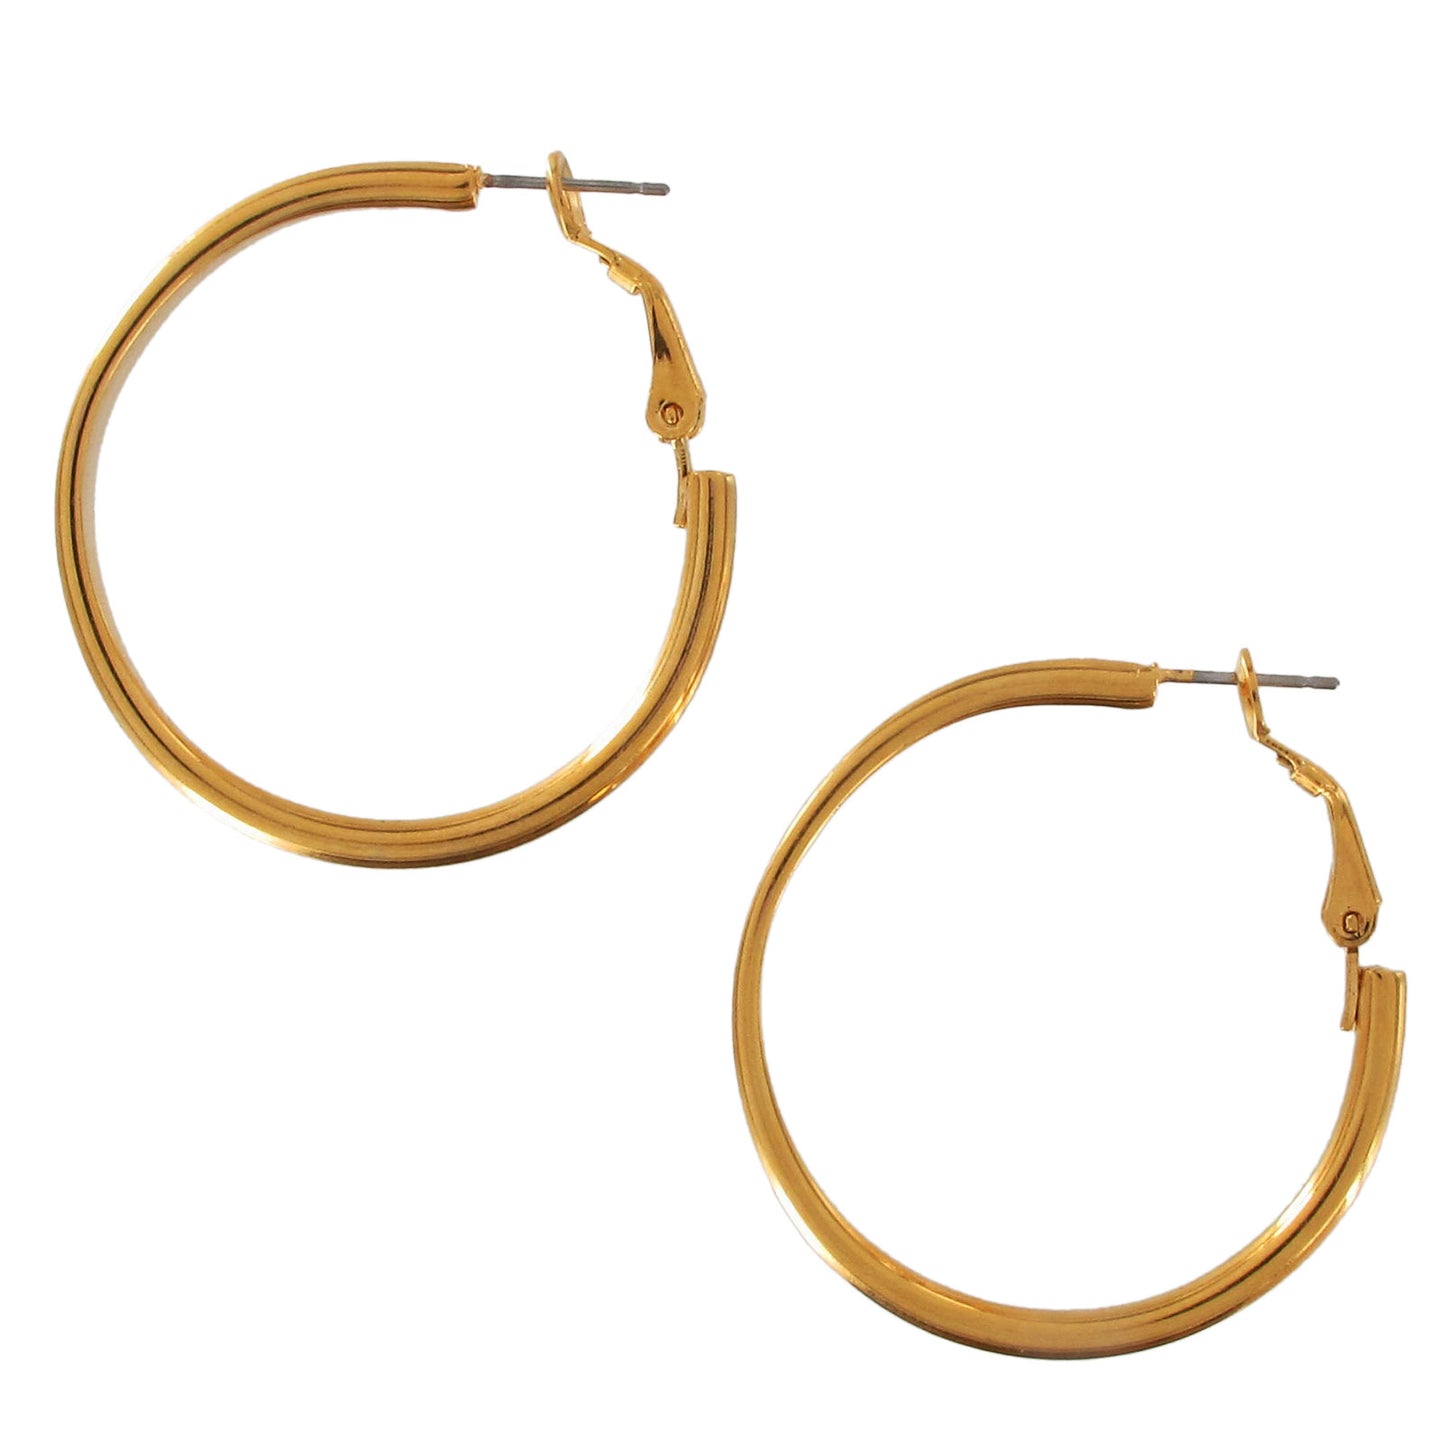 Gold Tone Solid Flat Hoop Latch Back Earrings 1 7/16"